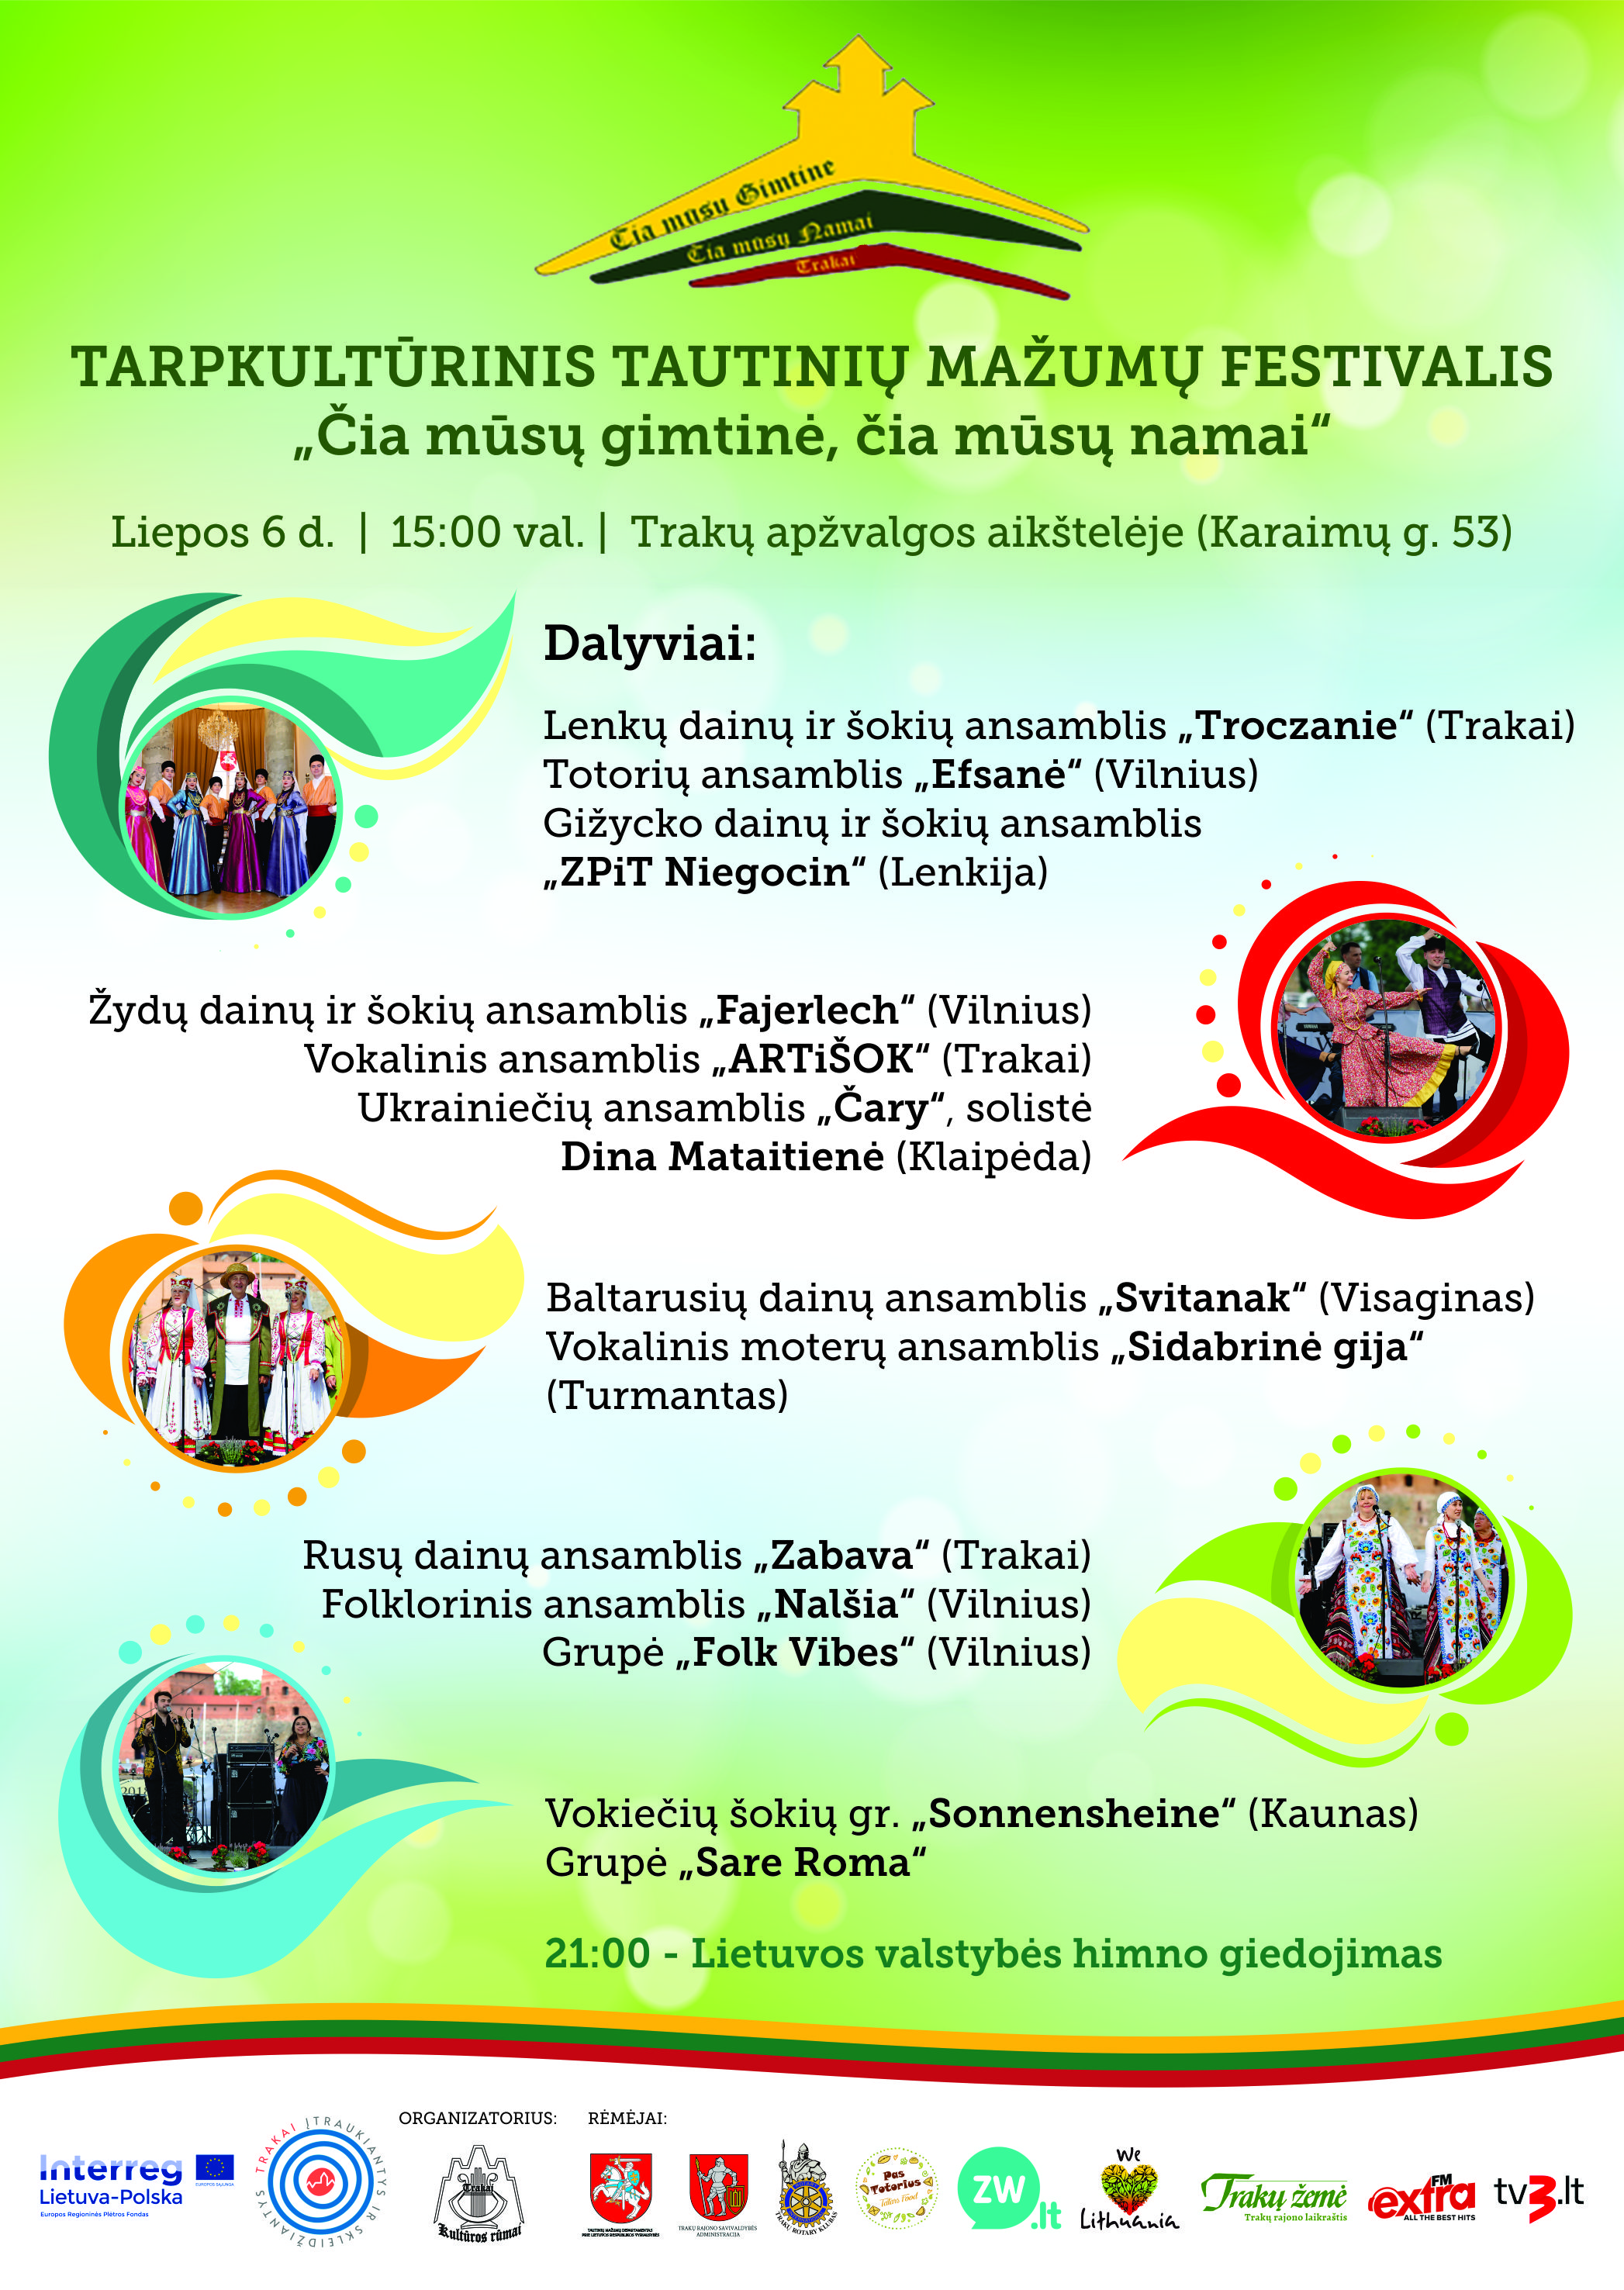 Tarpkultūrinis tautinių mažumų festivalis